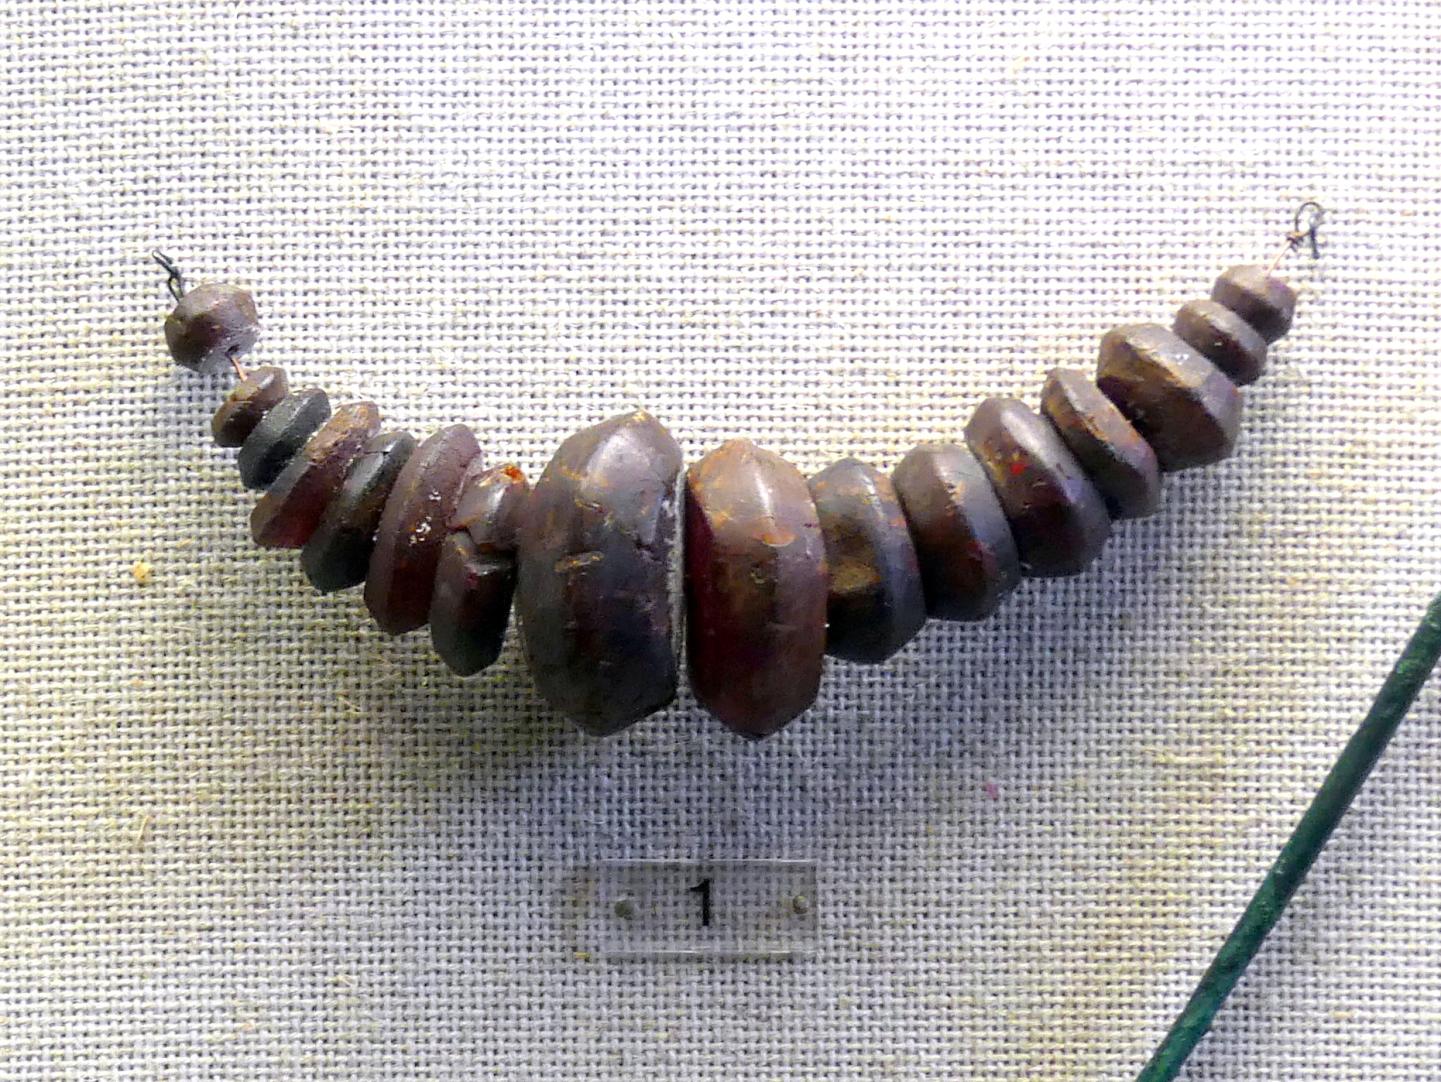 Bernsteinkette, Späte (Jüngere) Bronzezeit, 1500 - 700 v. Chr.